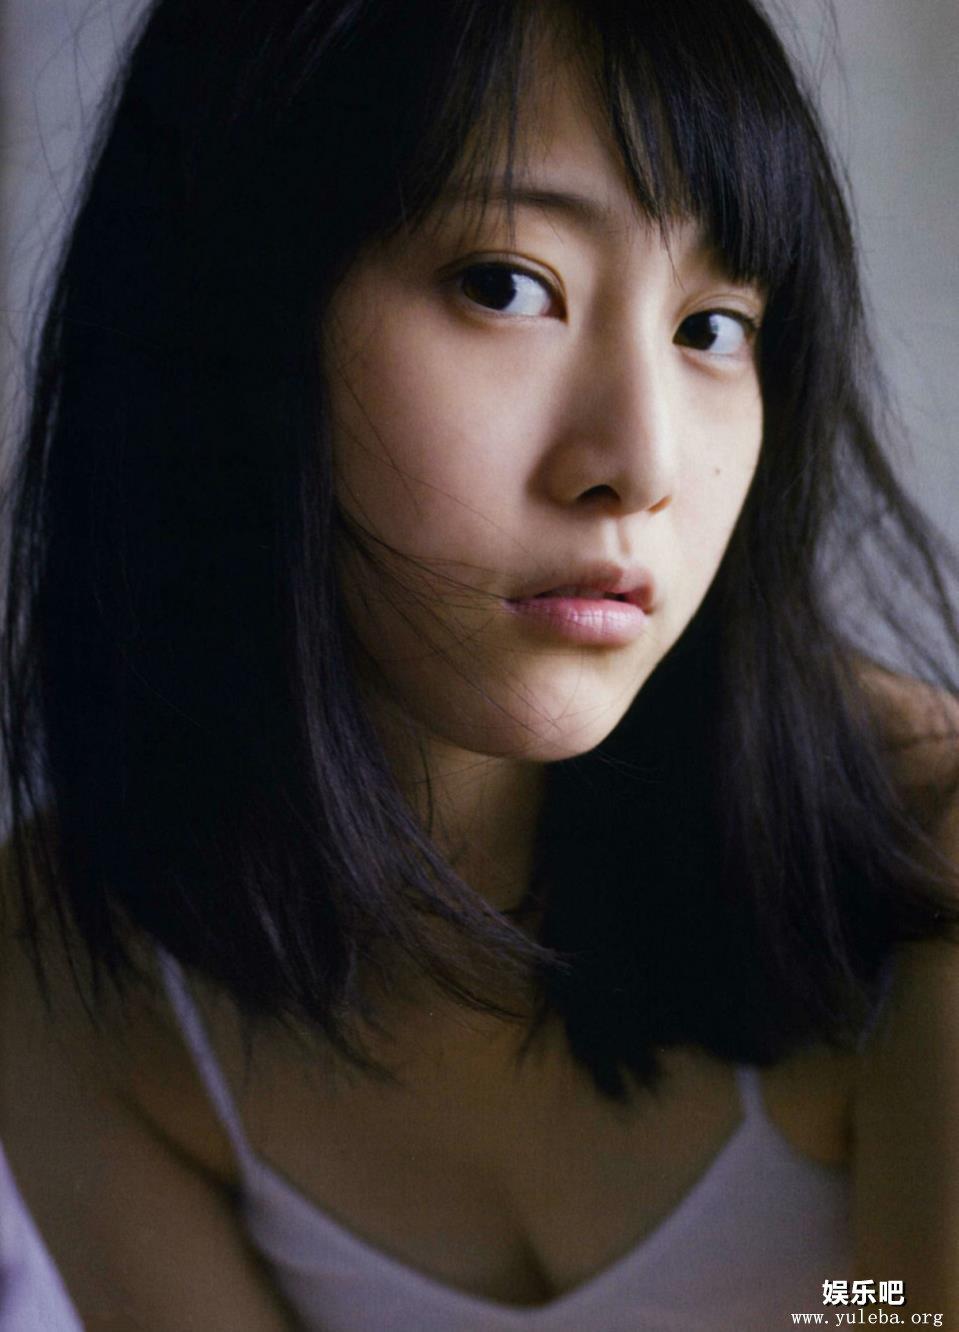 松井玲奈退出AKB48总选举 历年美照盘点,松井玲奈性感写真图片